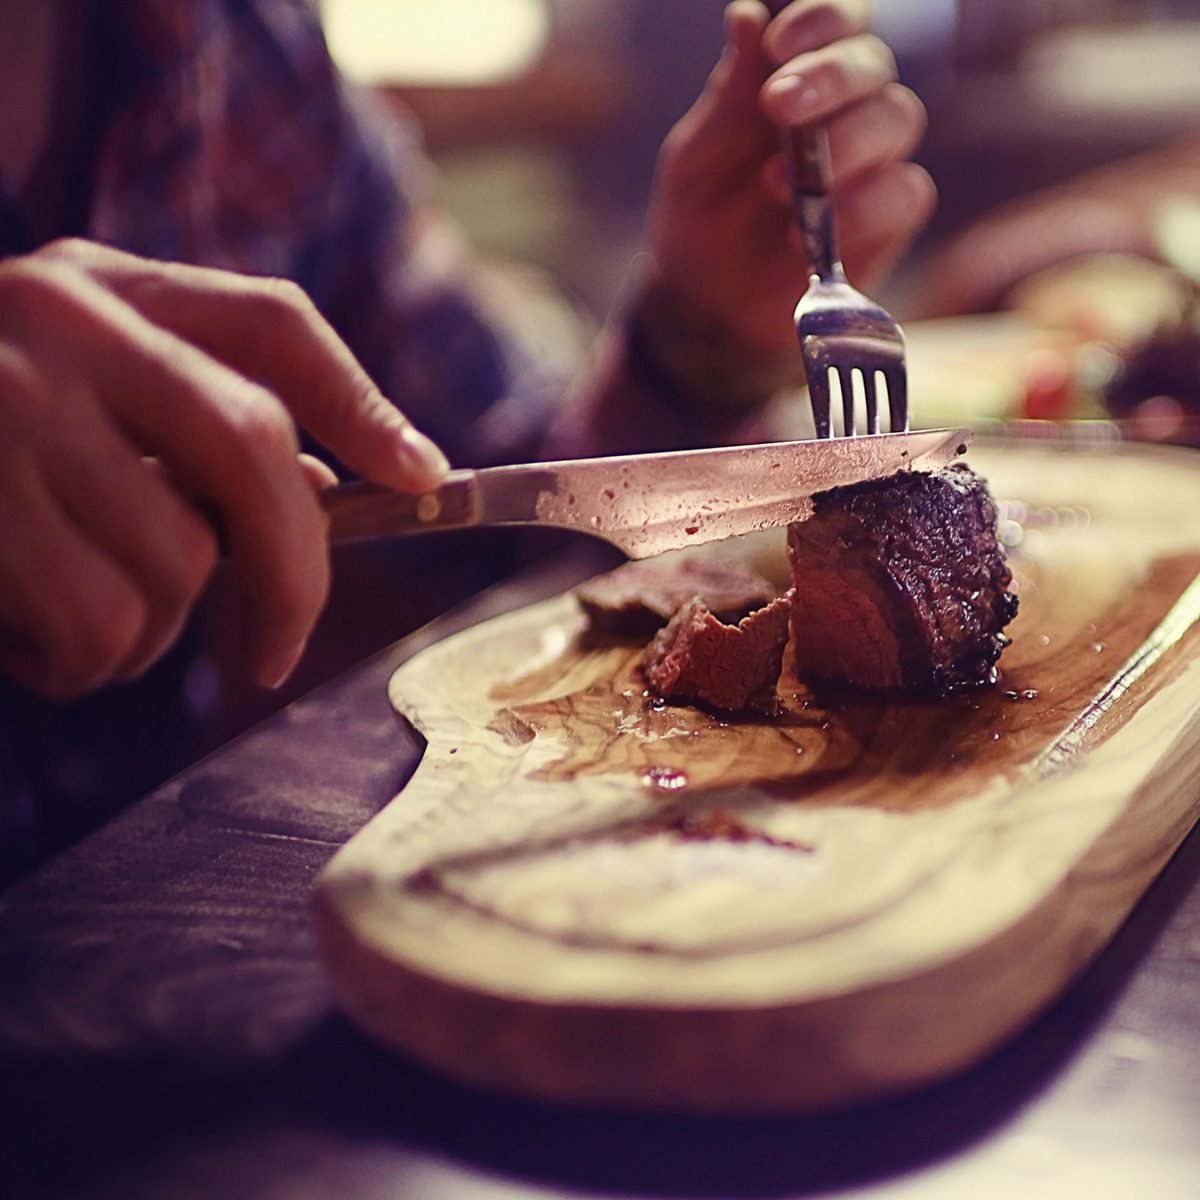 https://www.tasteofhome.com/wp-content/uploads/2019/07/steak-restaurant-on-table-dinner-meat-shutterstock_1125226382.jpg